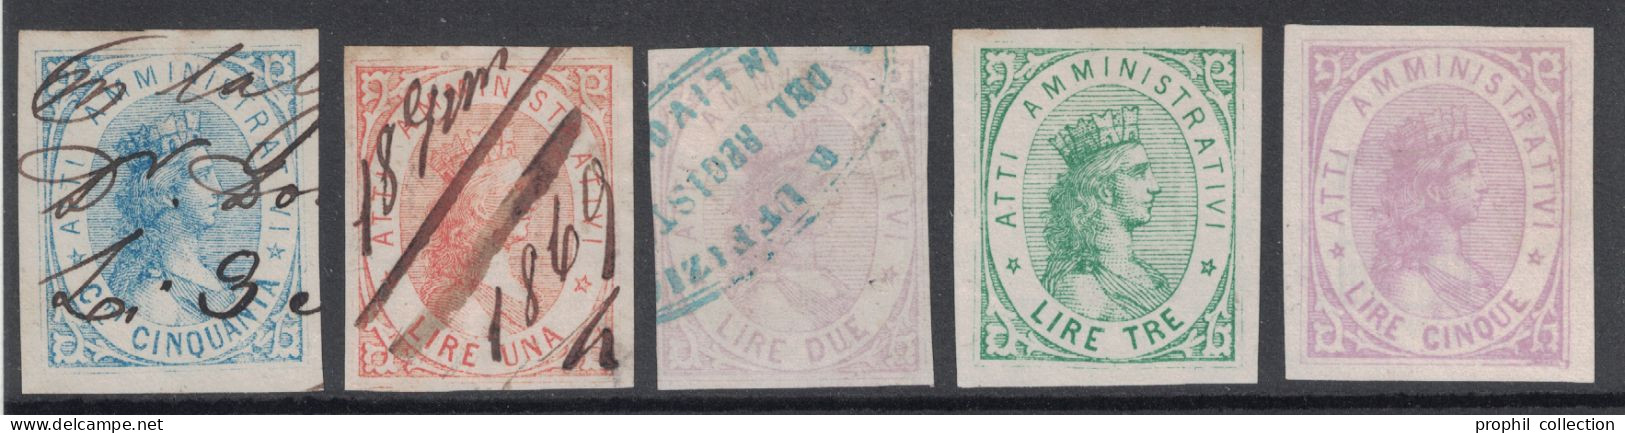 LOT De 5 TIMBRES FISCAUX D'ITALIE MARCA DA BOLLO ATTI AMMINISTRATIVI 1868 - Revenue Stamps